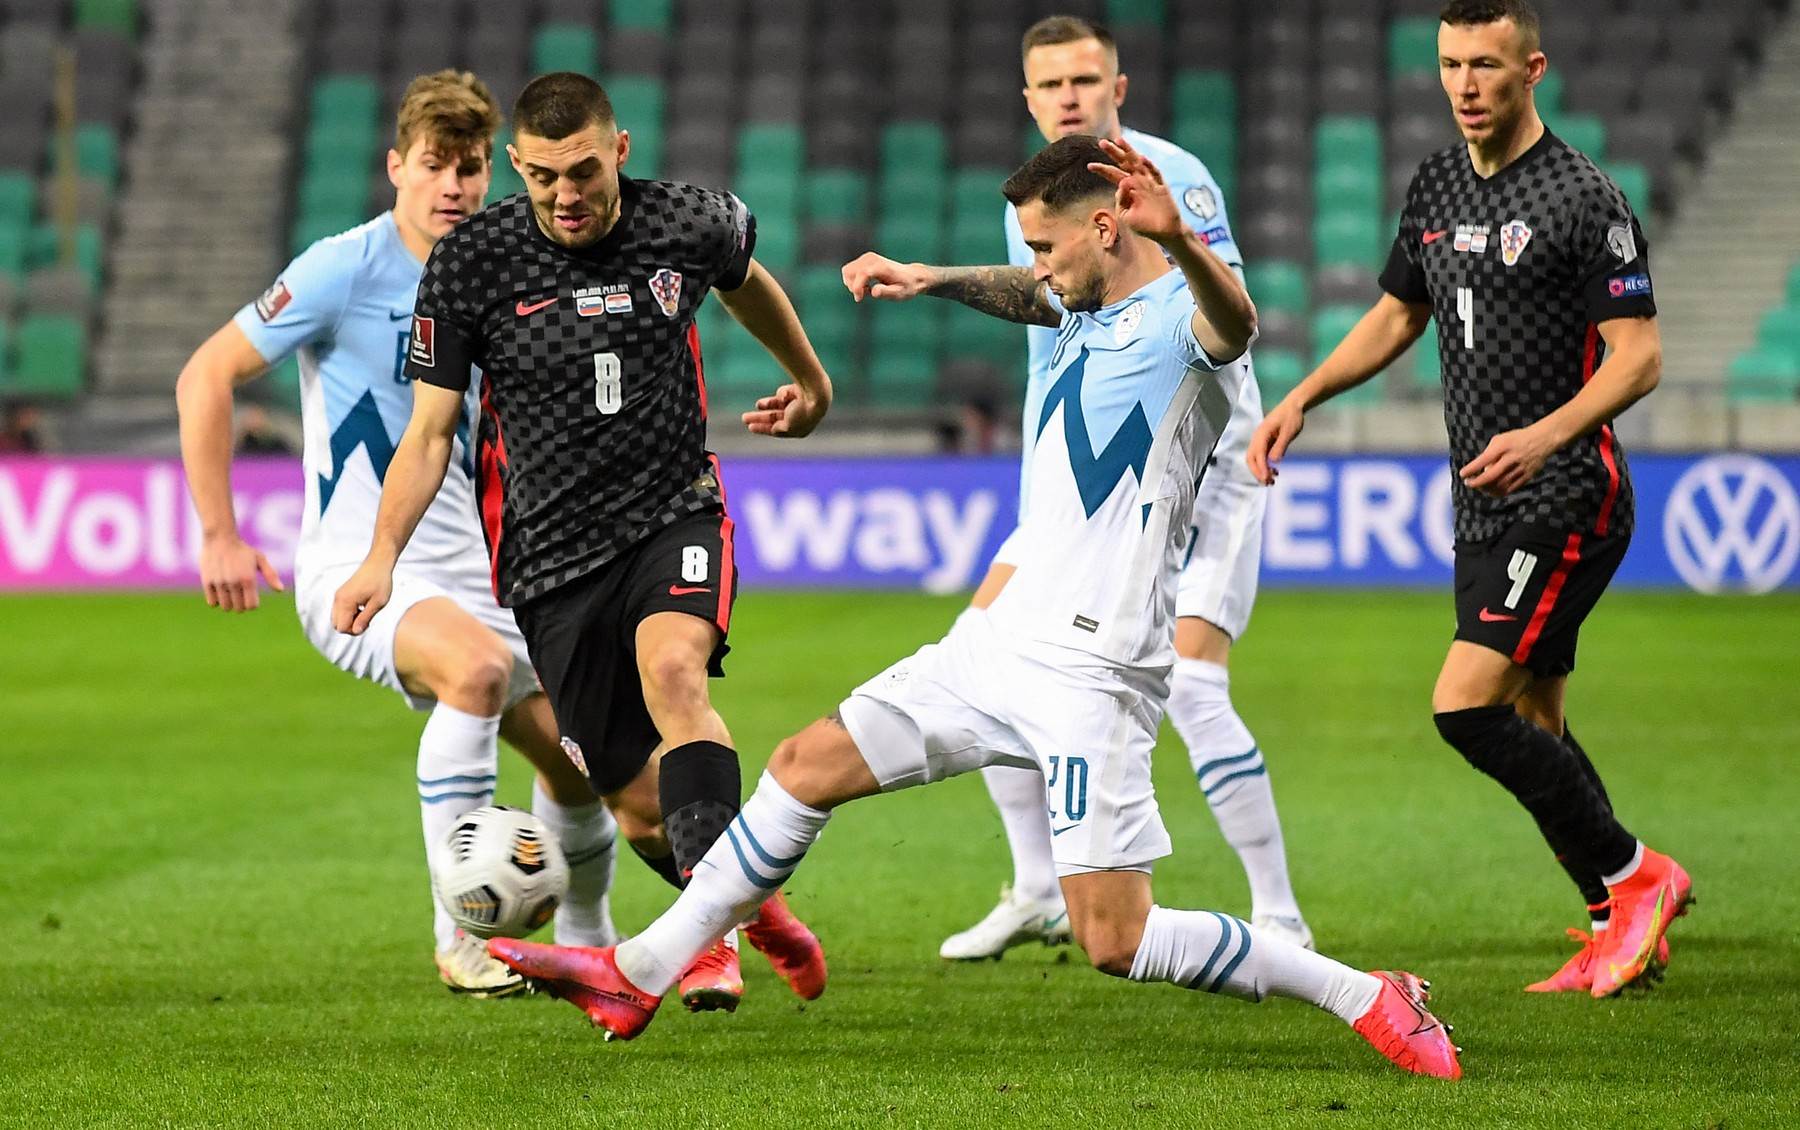  svjetsko prvenstvo 2022 kvalifikacije hrvatska slovenija 3 0 